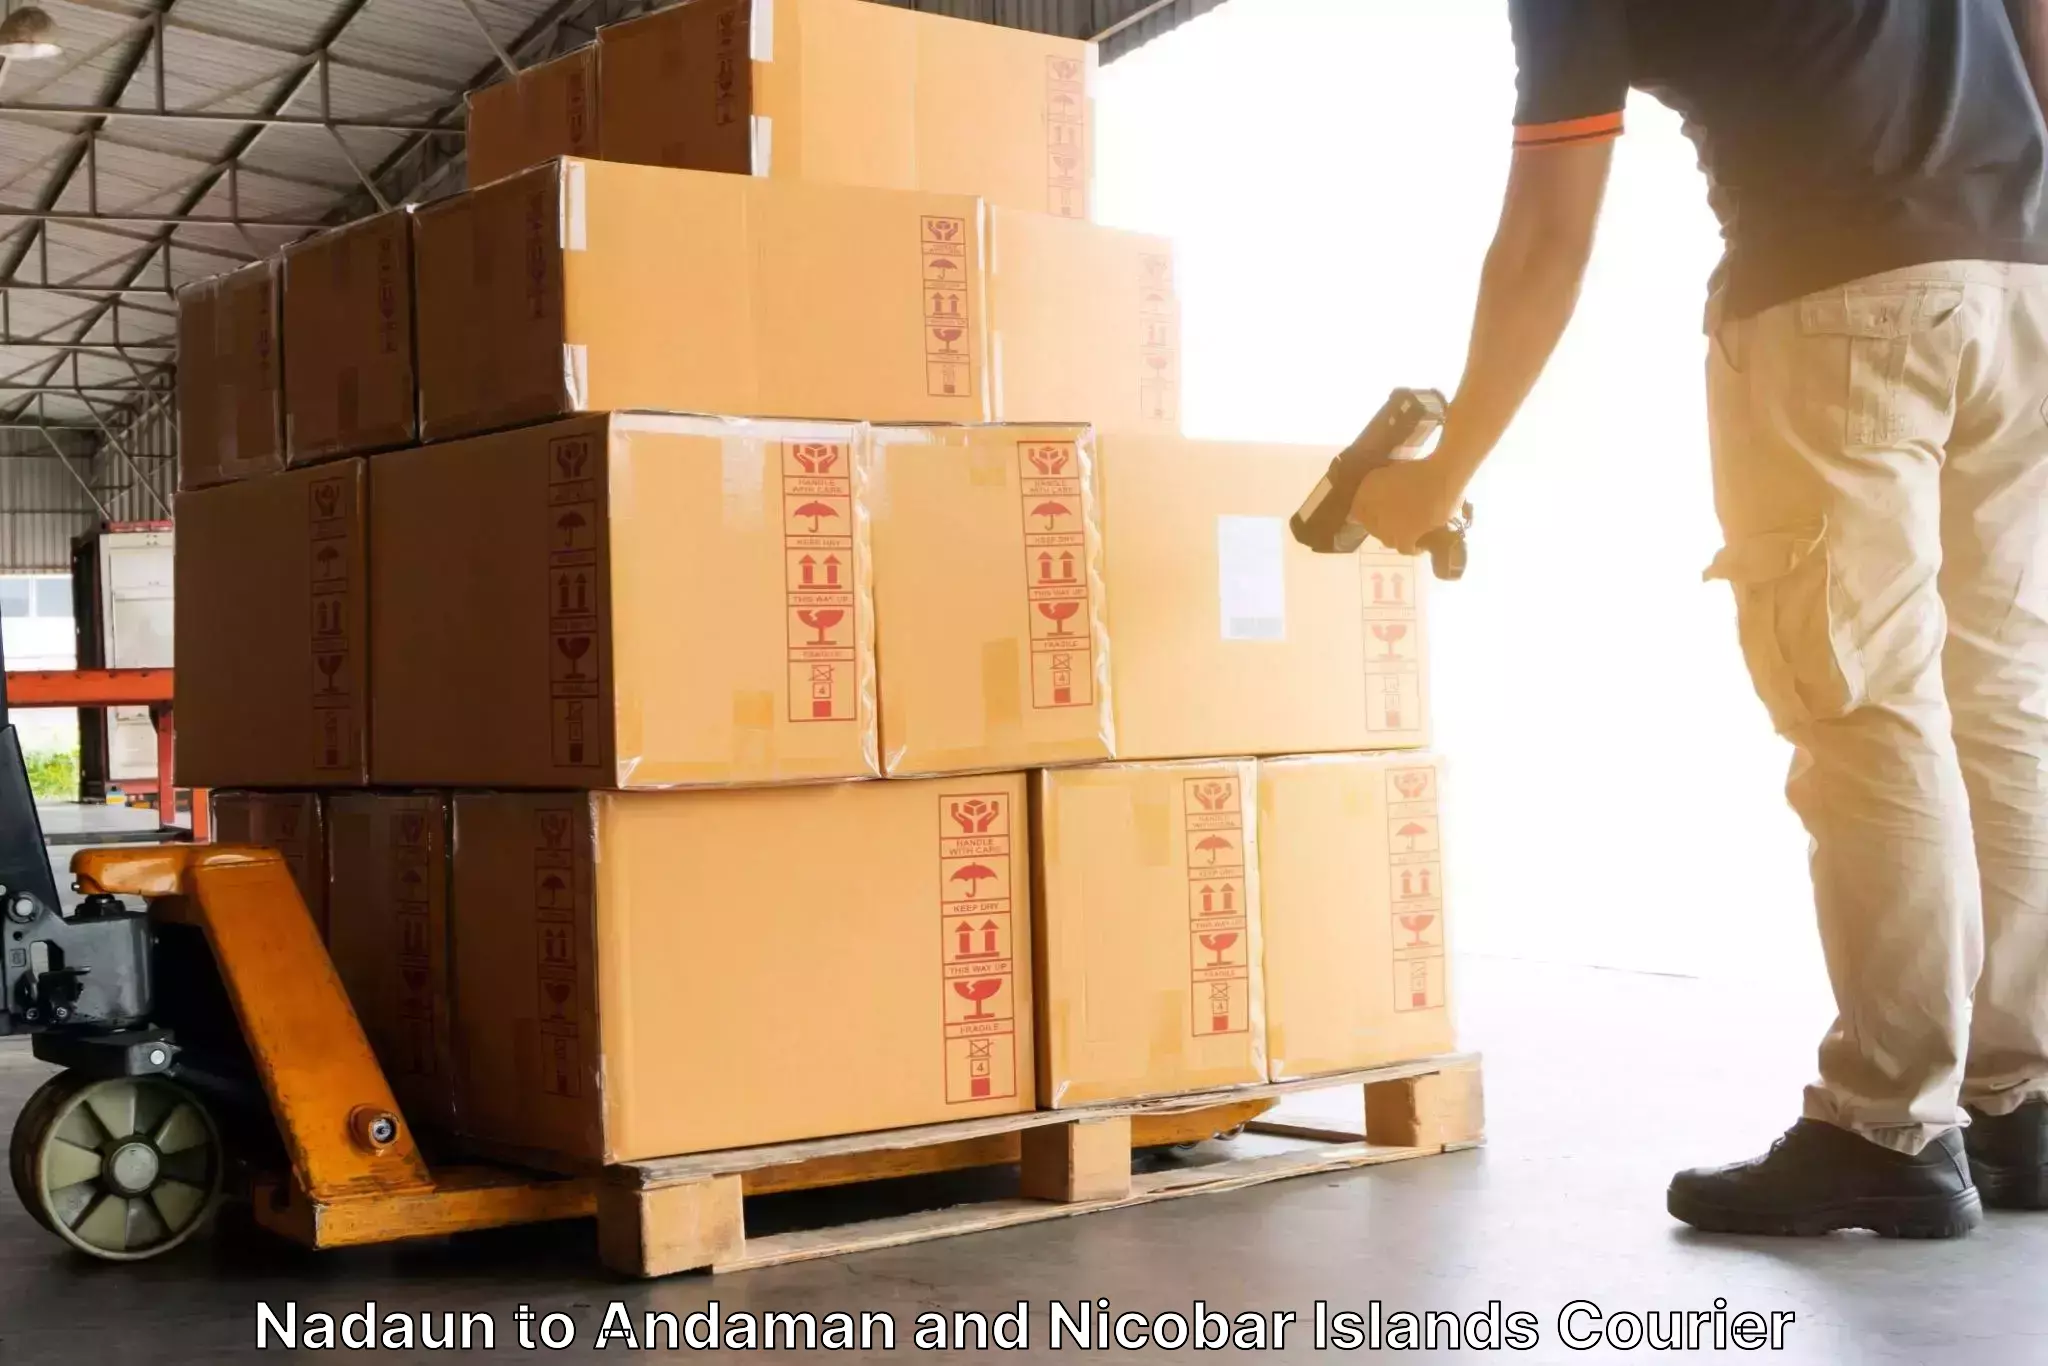 Smart logistics strategies Nadaun to Andaman and Nicobar Islands